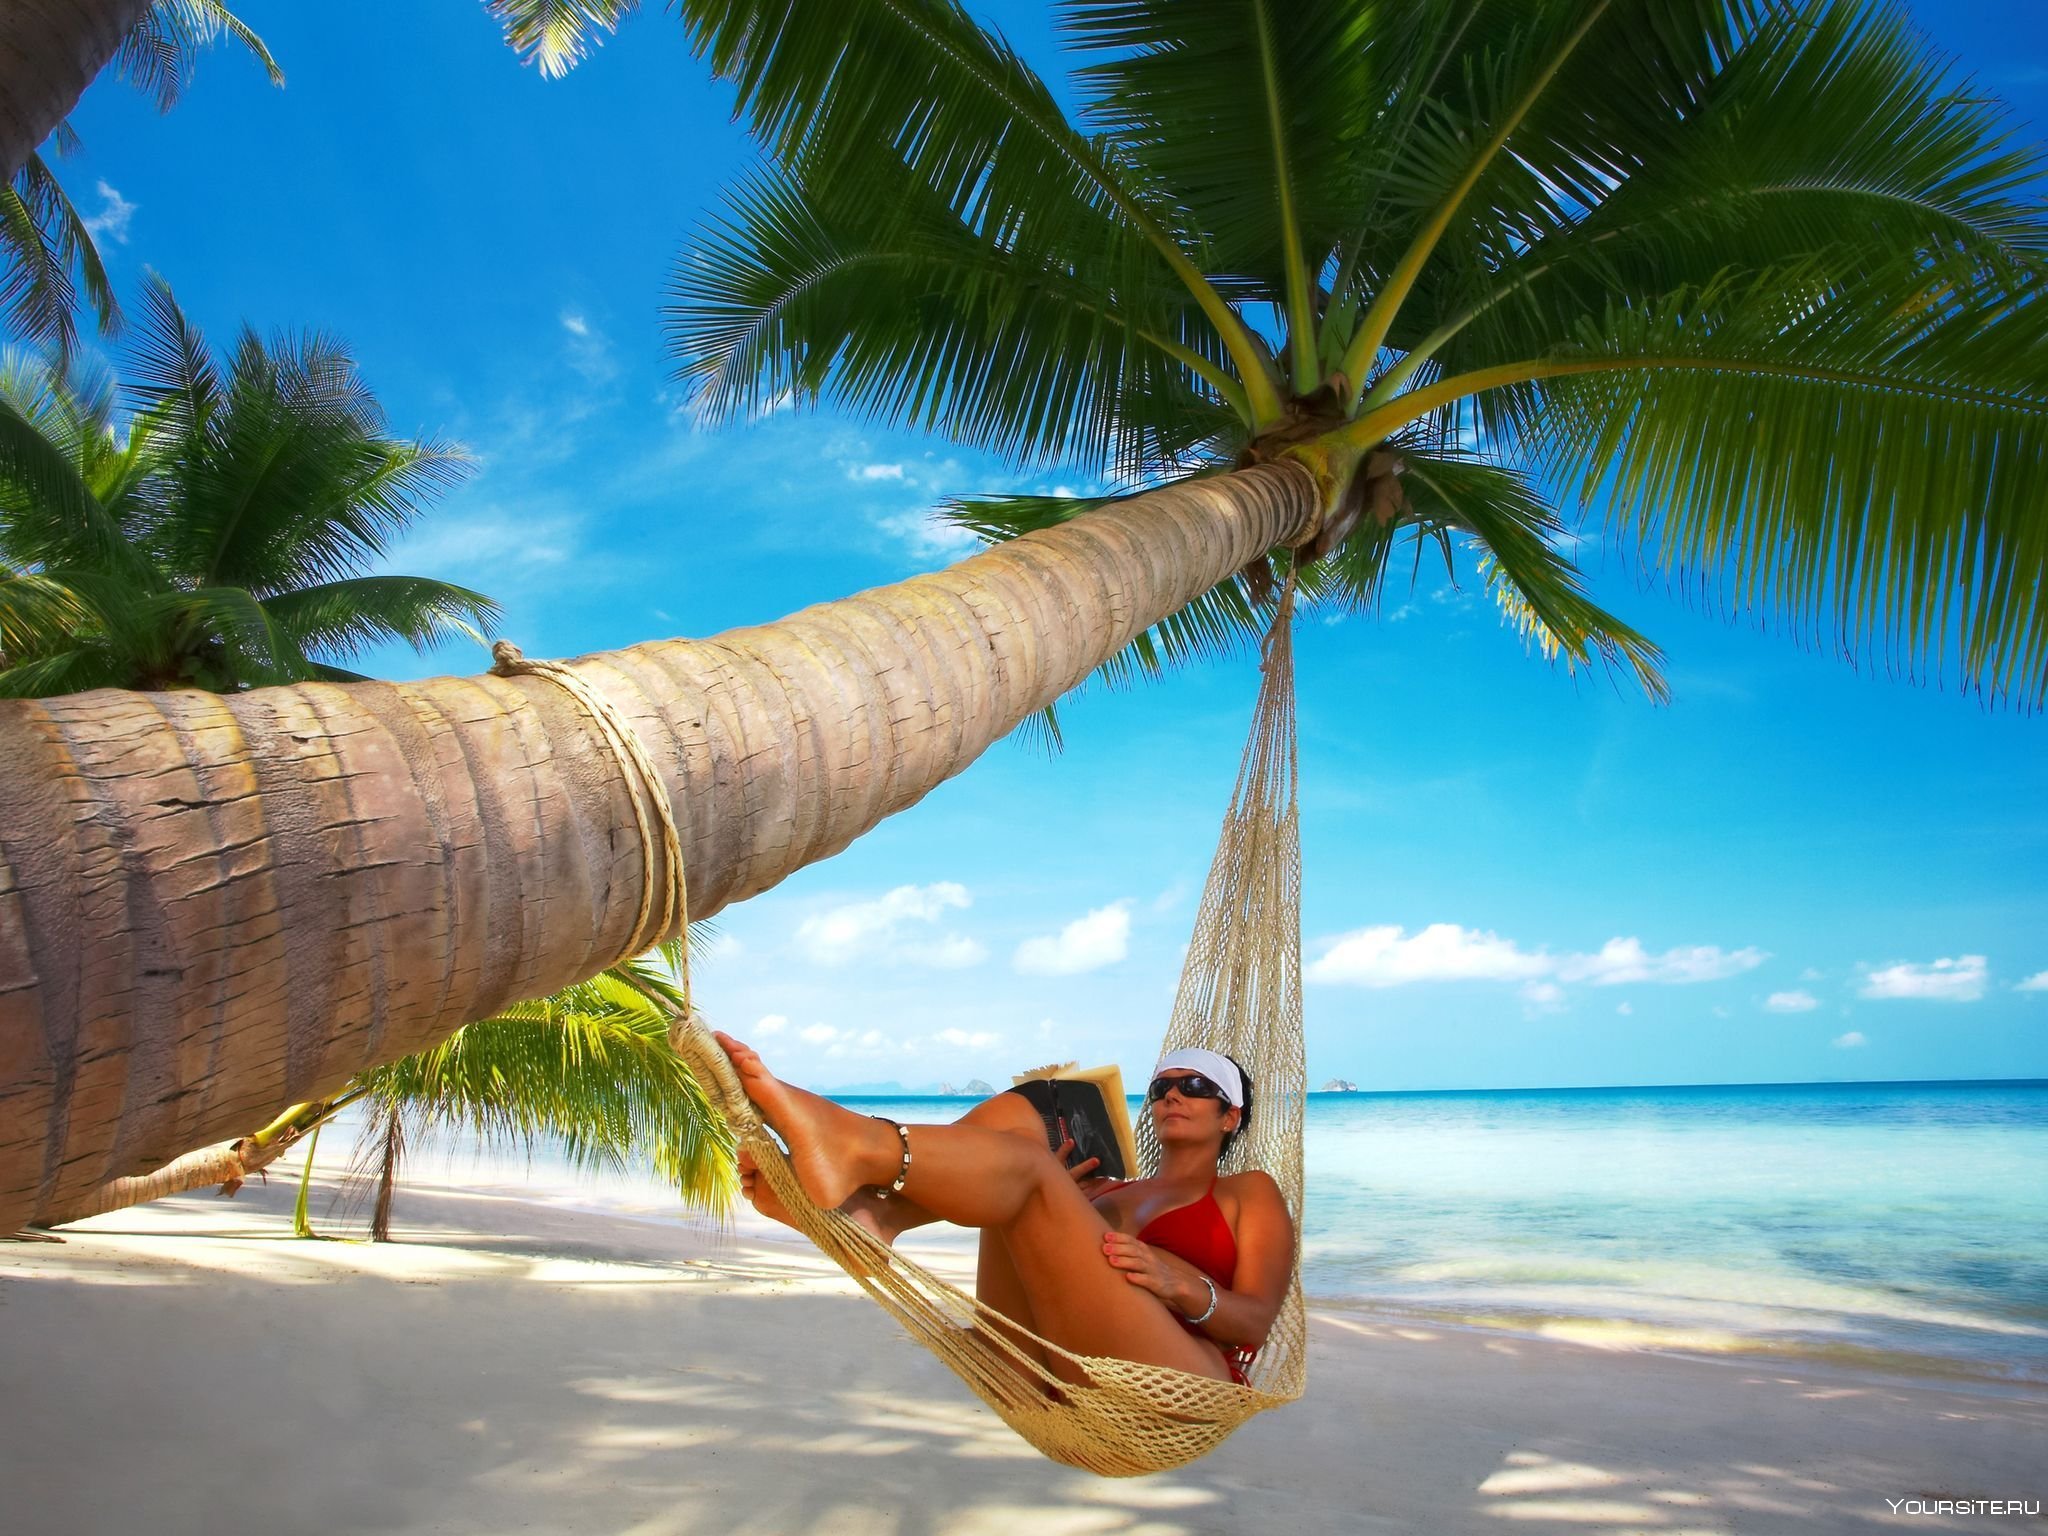 Куда можно съездить отдохнуть. Отдых картинки. Пальма Баунти с девушкой. Под пальмой. Путешествие в тропики.